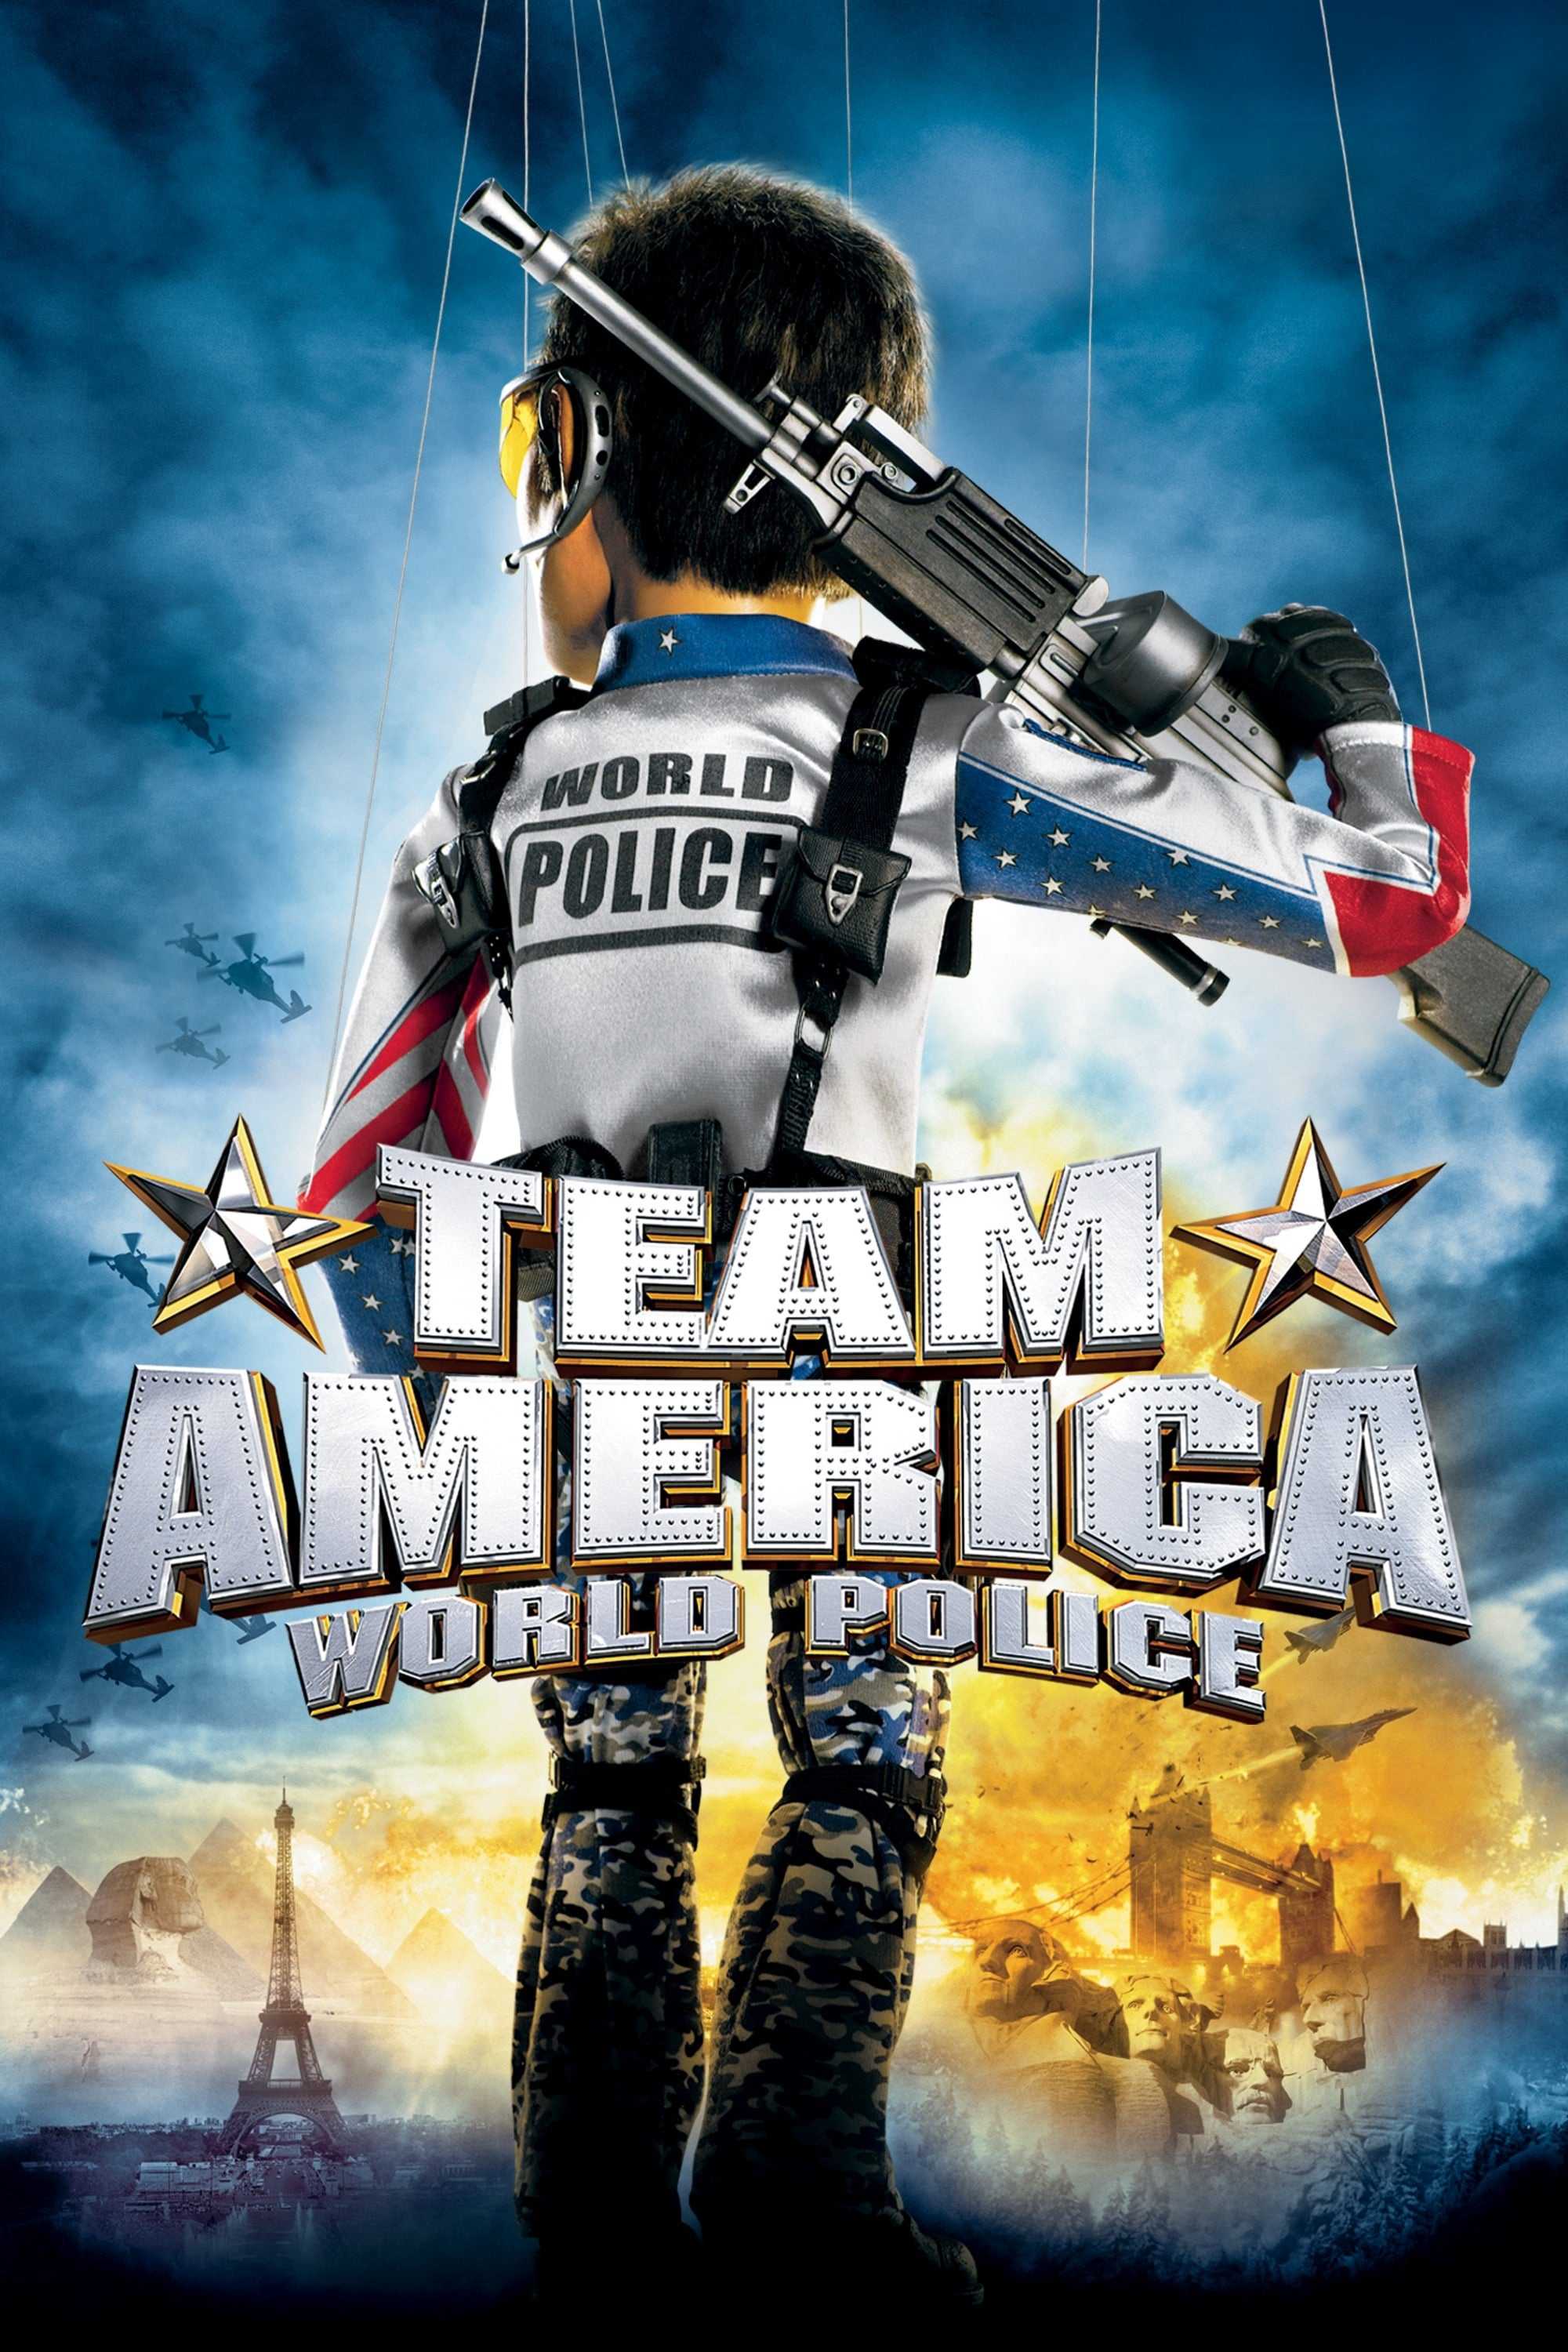 Team america: world police - Team america: world police